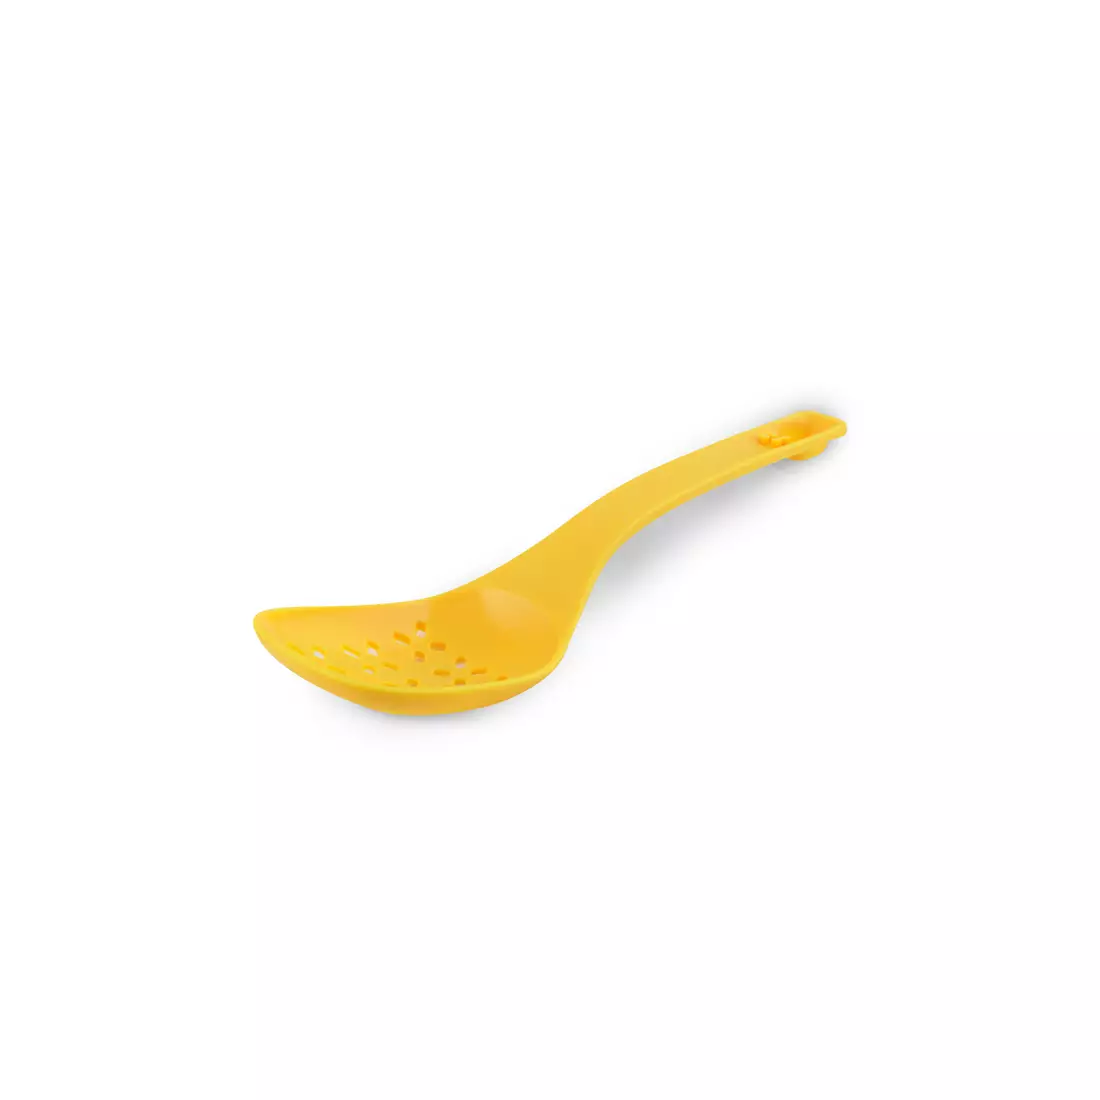 VIALLI DESIGN COLORI slotted spoon yellow